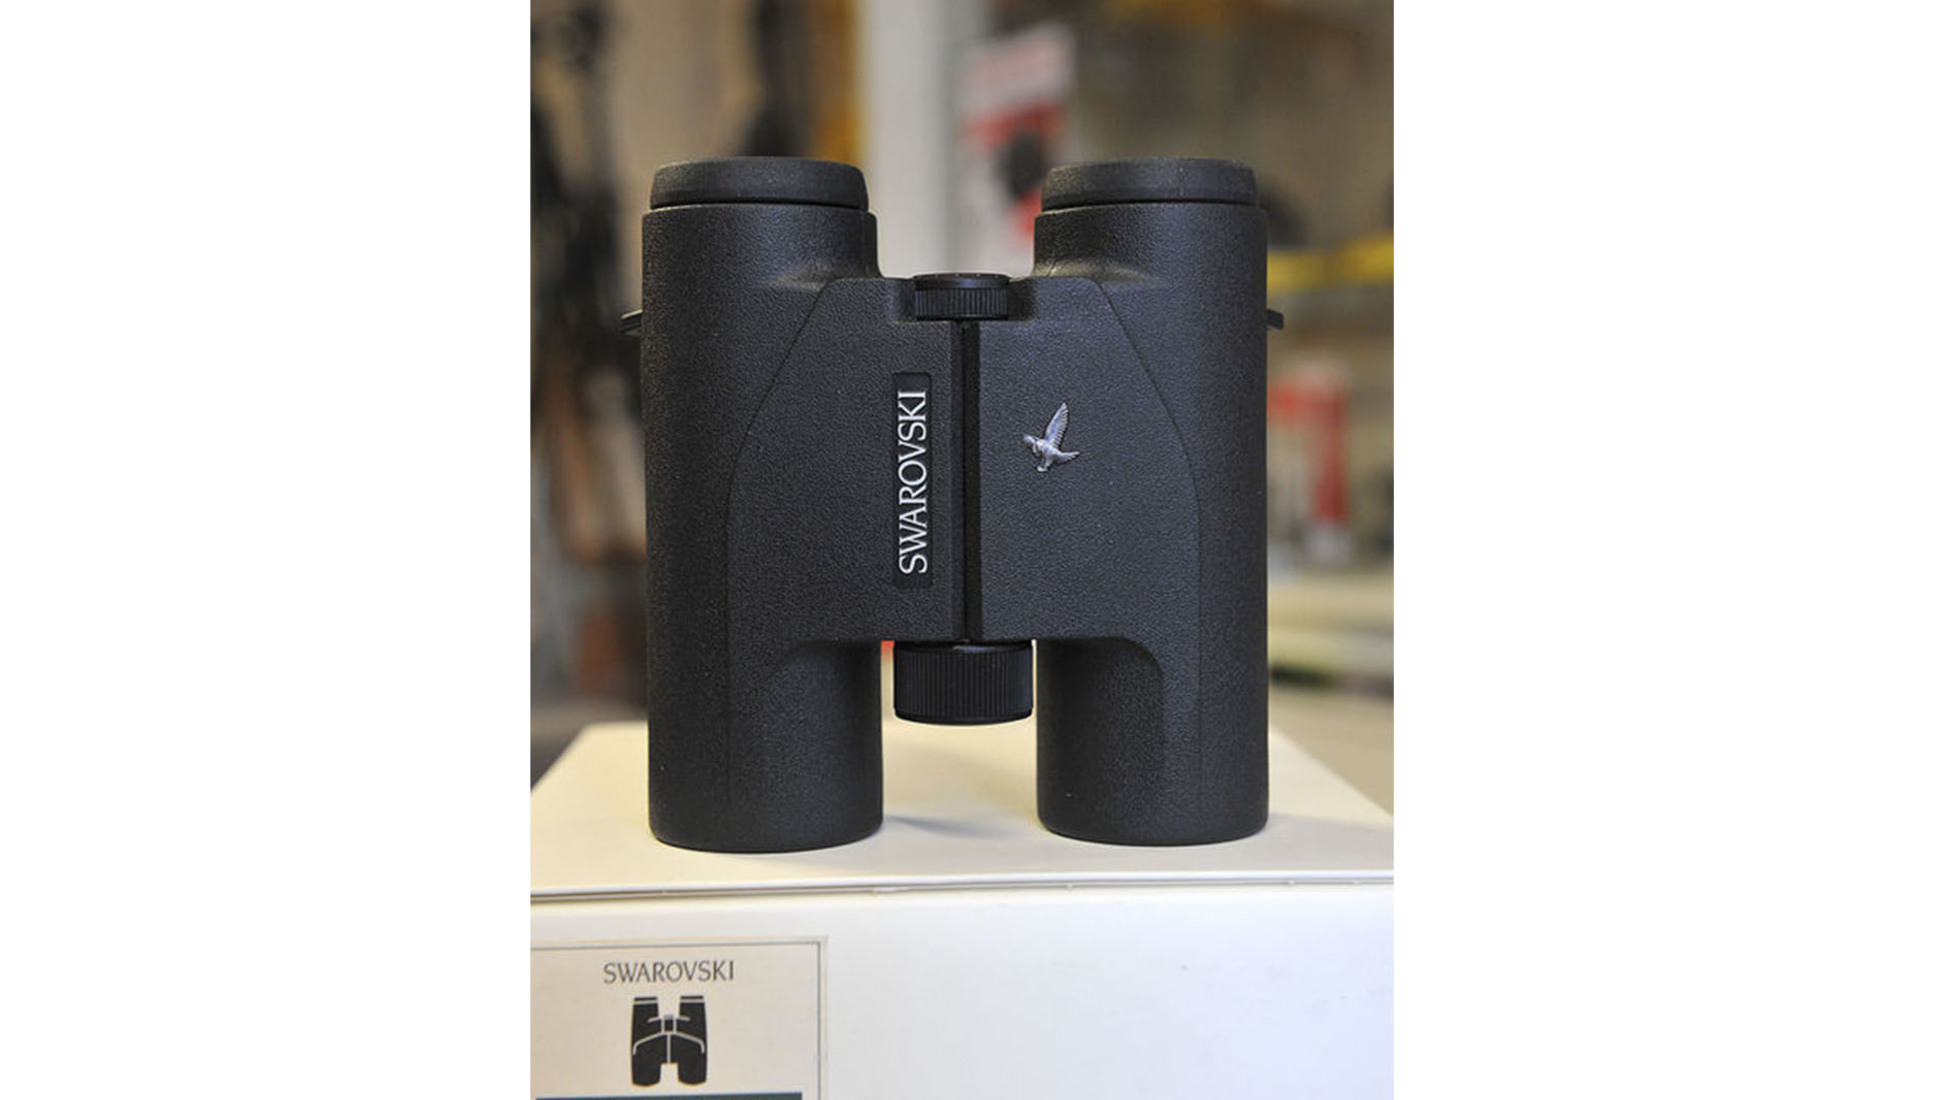 Swarovski Optik производит оптические приборы, а также предлагает «бриллианты» в области   бинокль   и телескопы